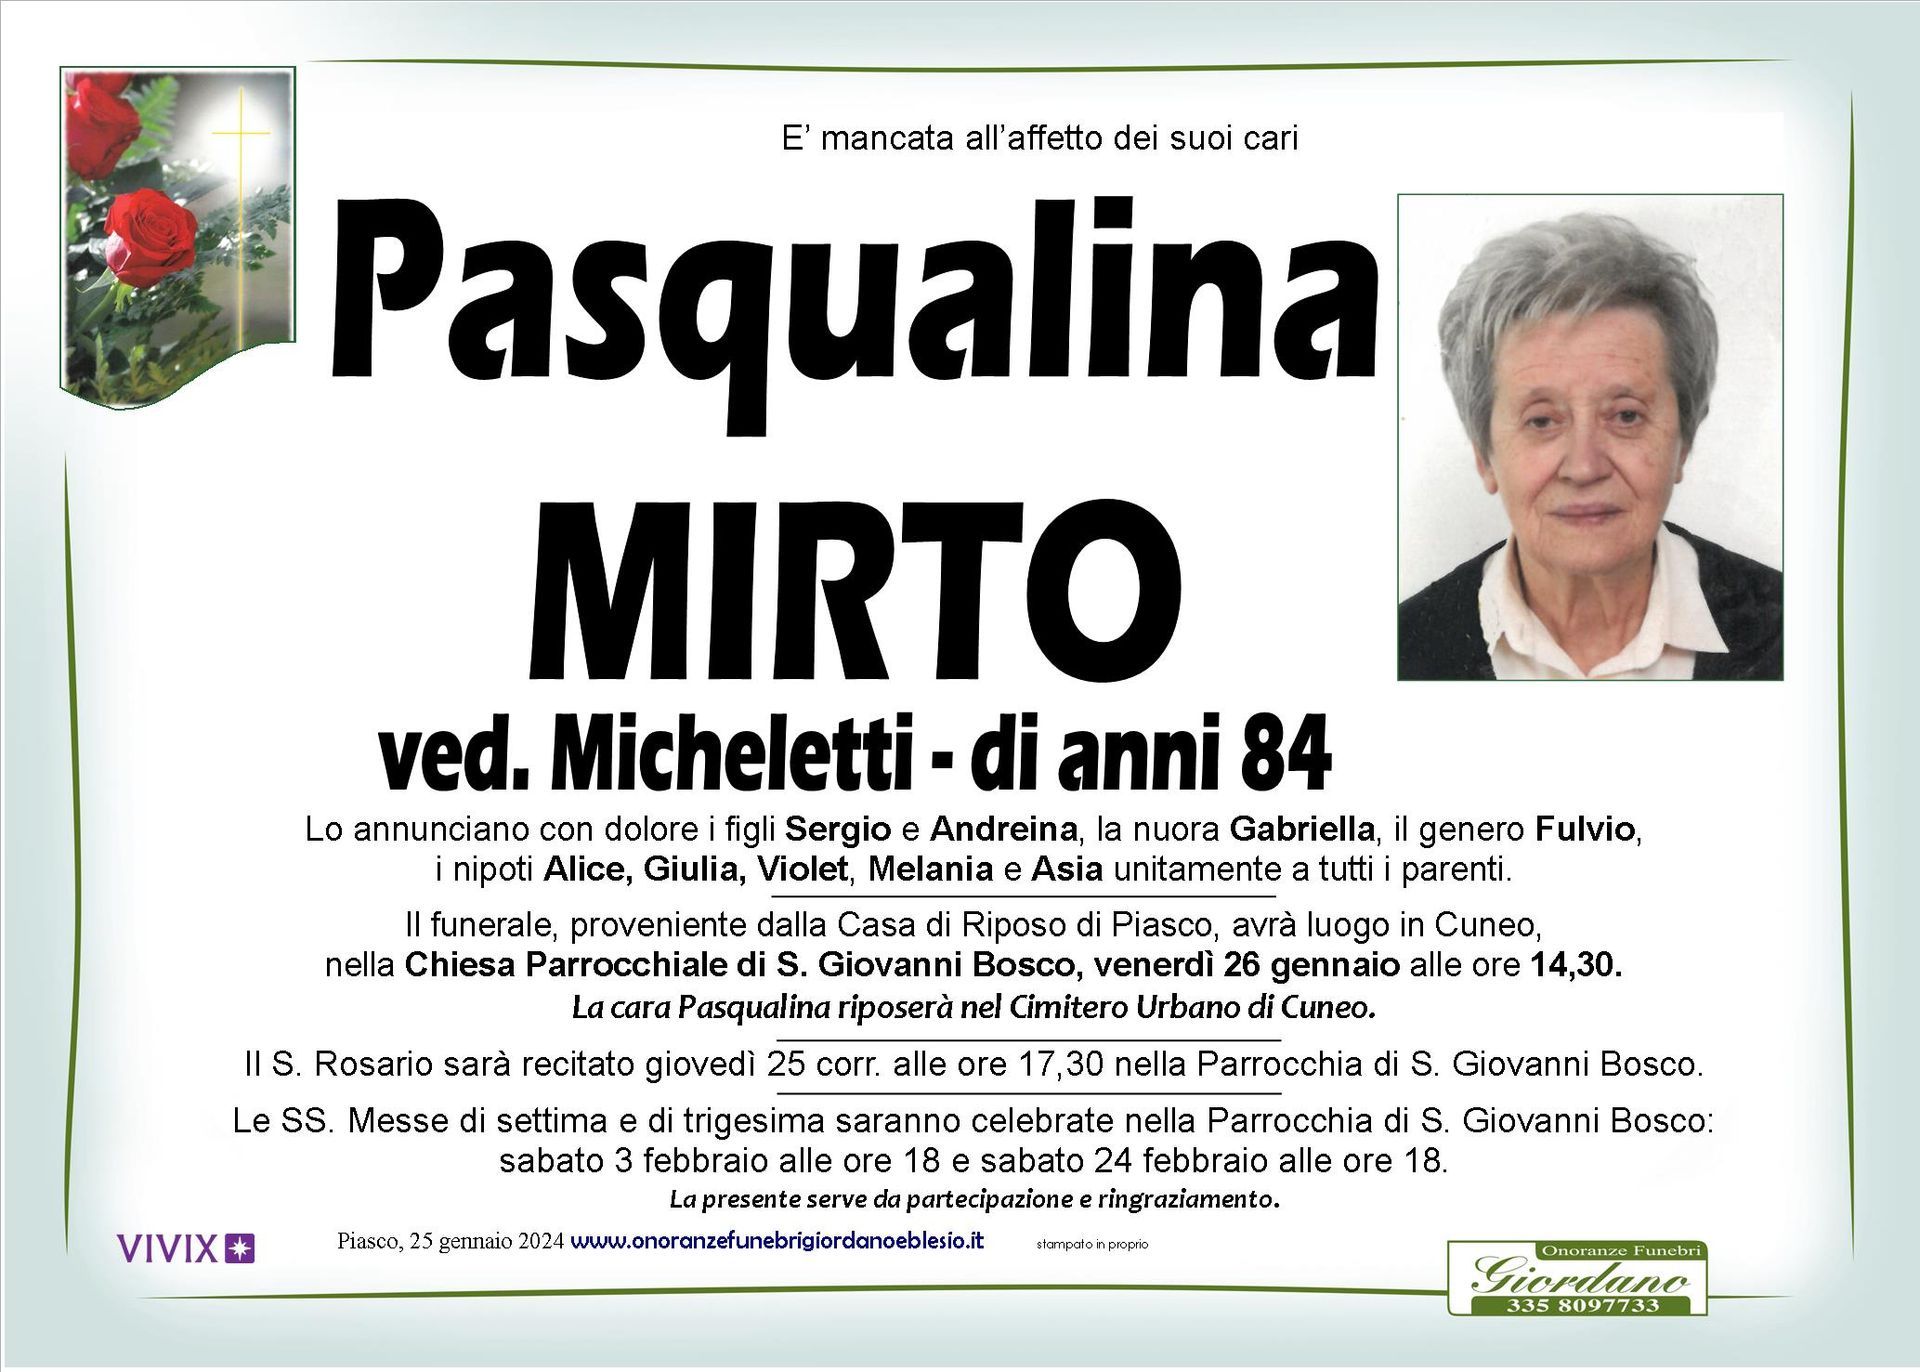 necrologio MIRTO Pasqualina ved. Micheletti